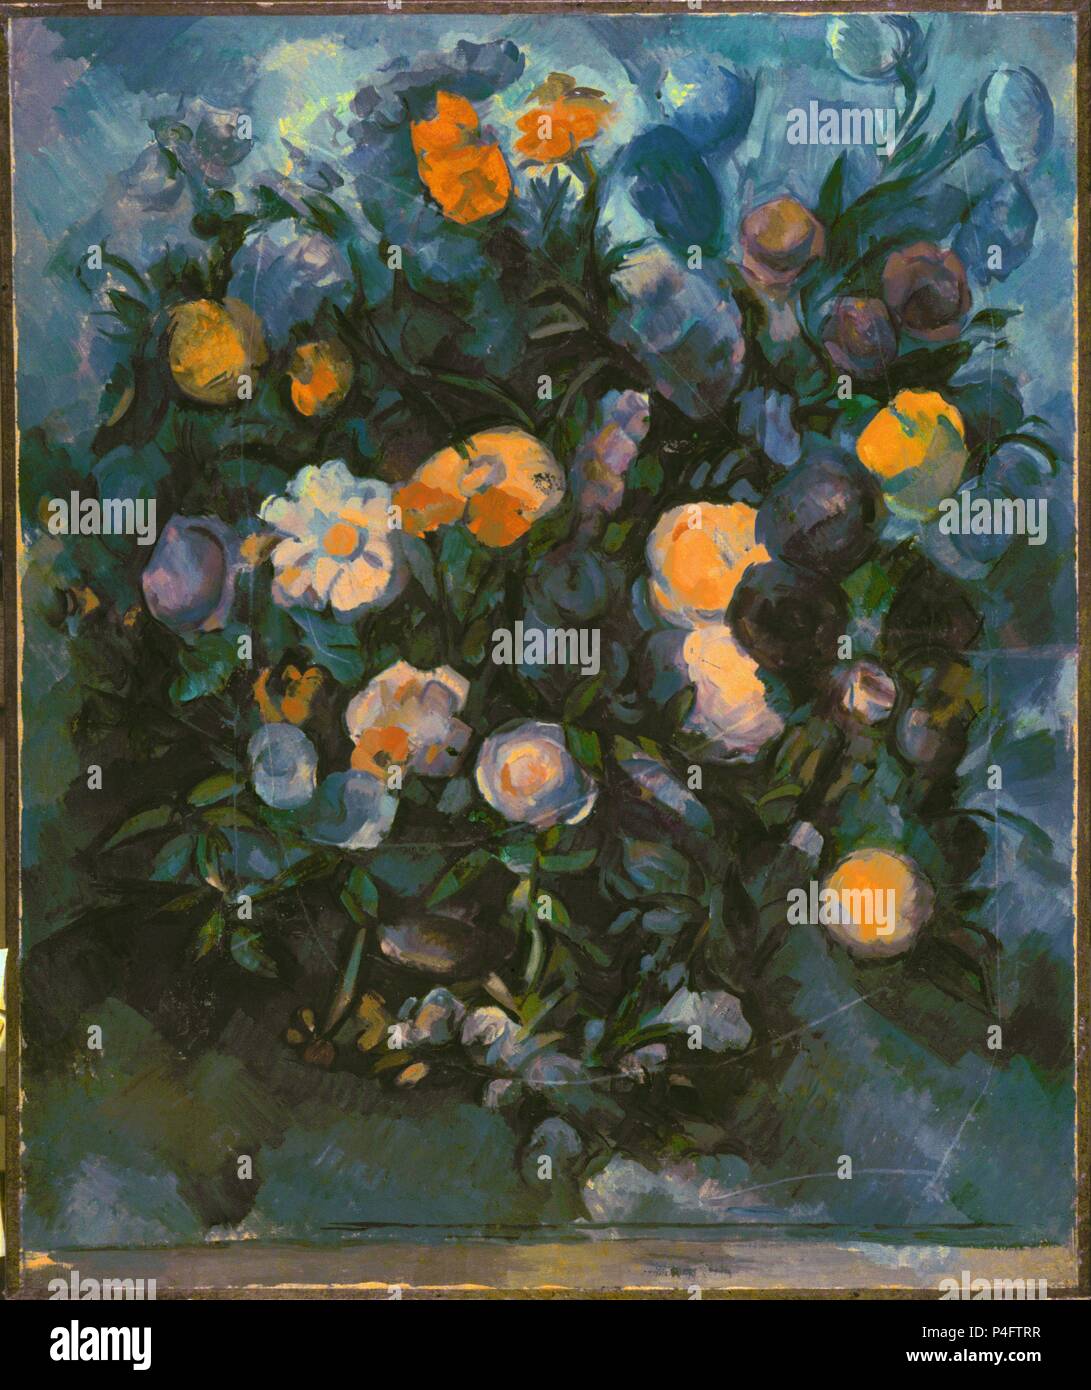 Vaso di fiori - 1902/04 - 77x64 cm - Olio su tela - Francese Post-Impressionism. Autore: Paul Cézanne (1839-1906). Posizione: Museo Pushkin, MOSKAU, RUSSIA. Noto anche come: Flores. Foto Stock